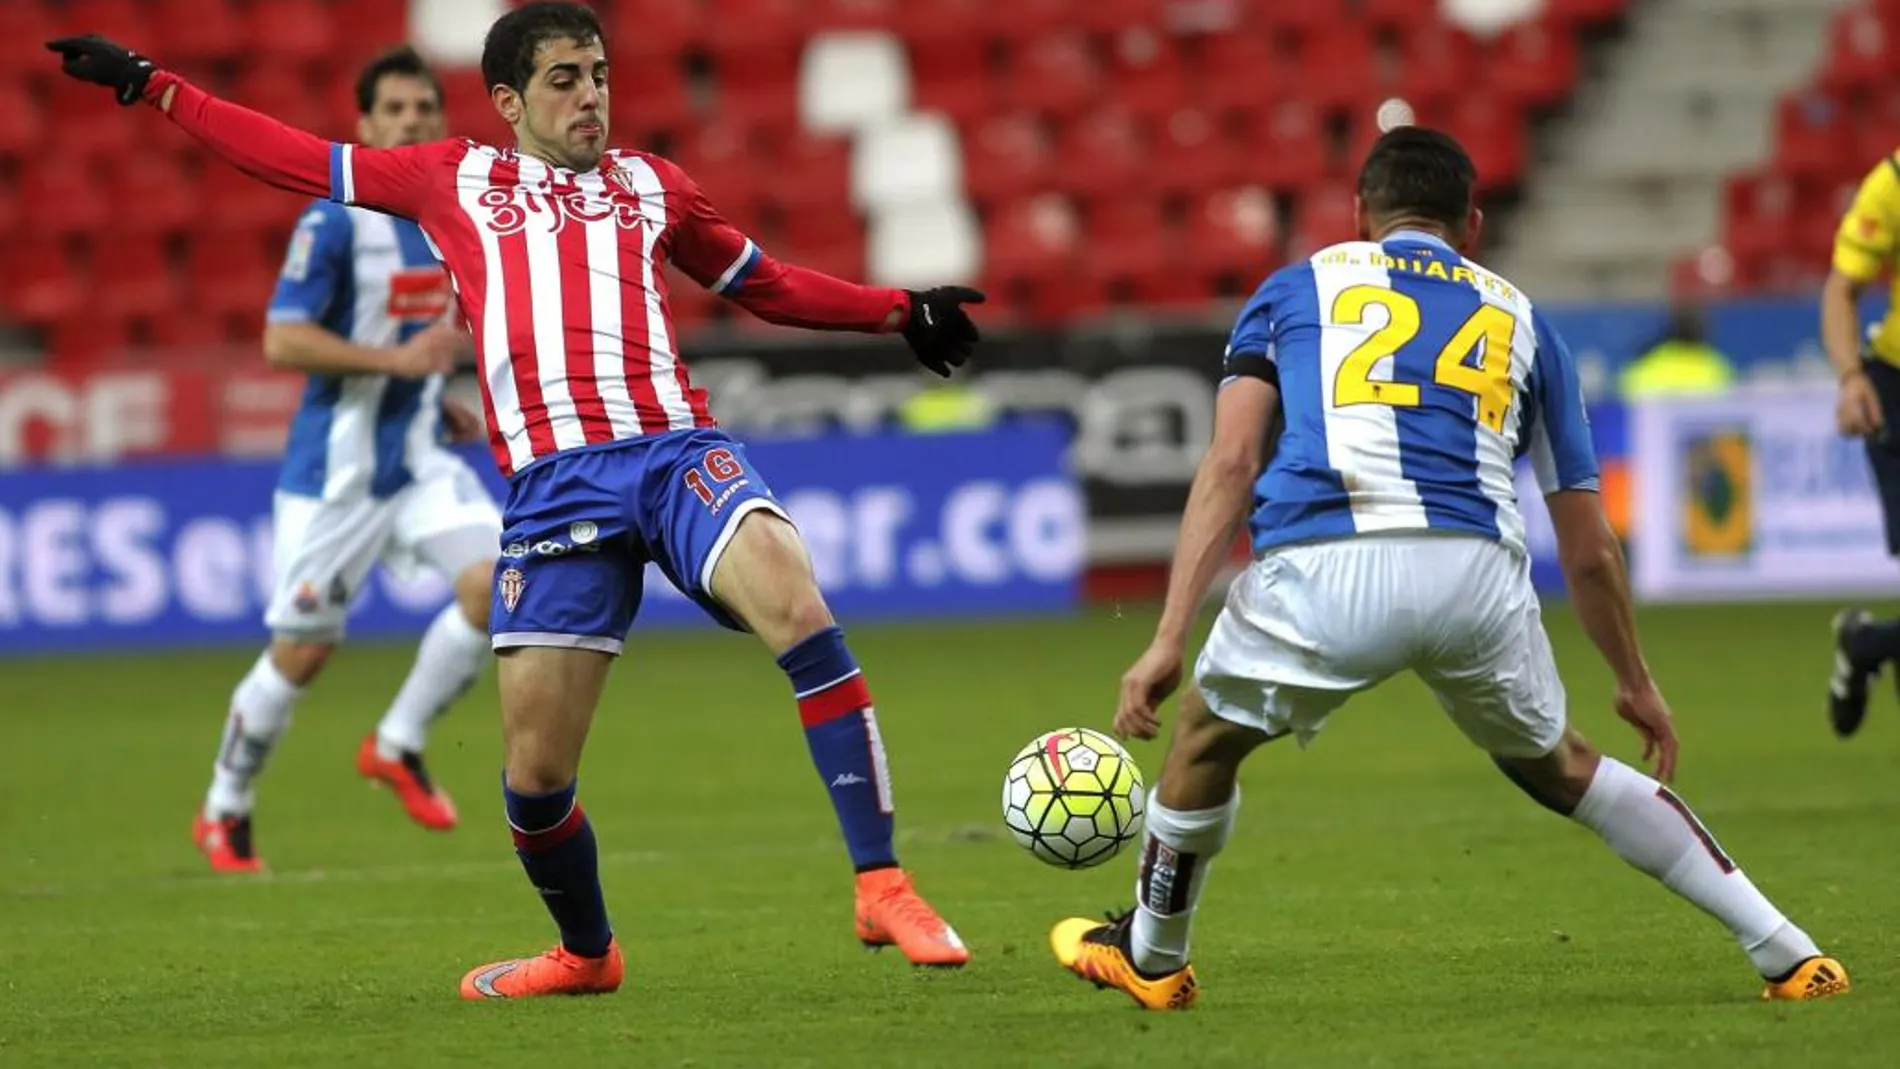 El delantero del Sporting Carlos Castro pelea un balón con el defensa del Espanyol Oscar Duarte durante el partido